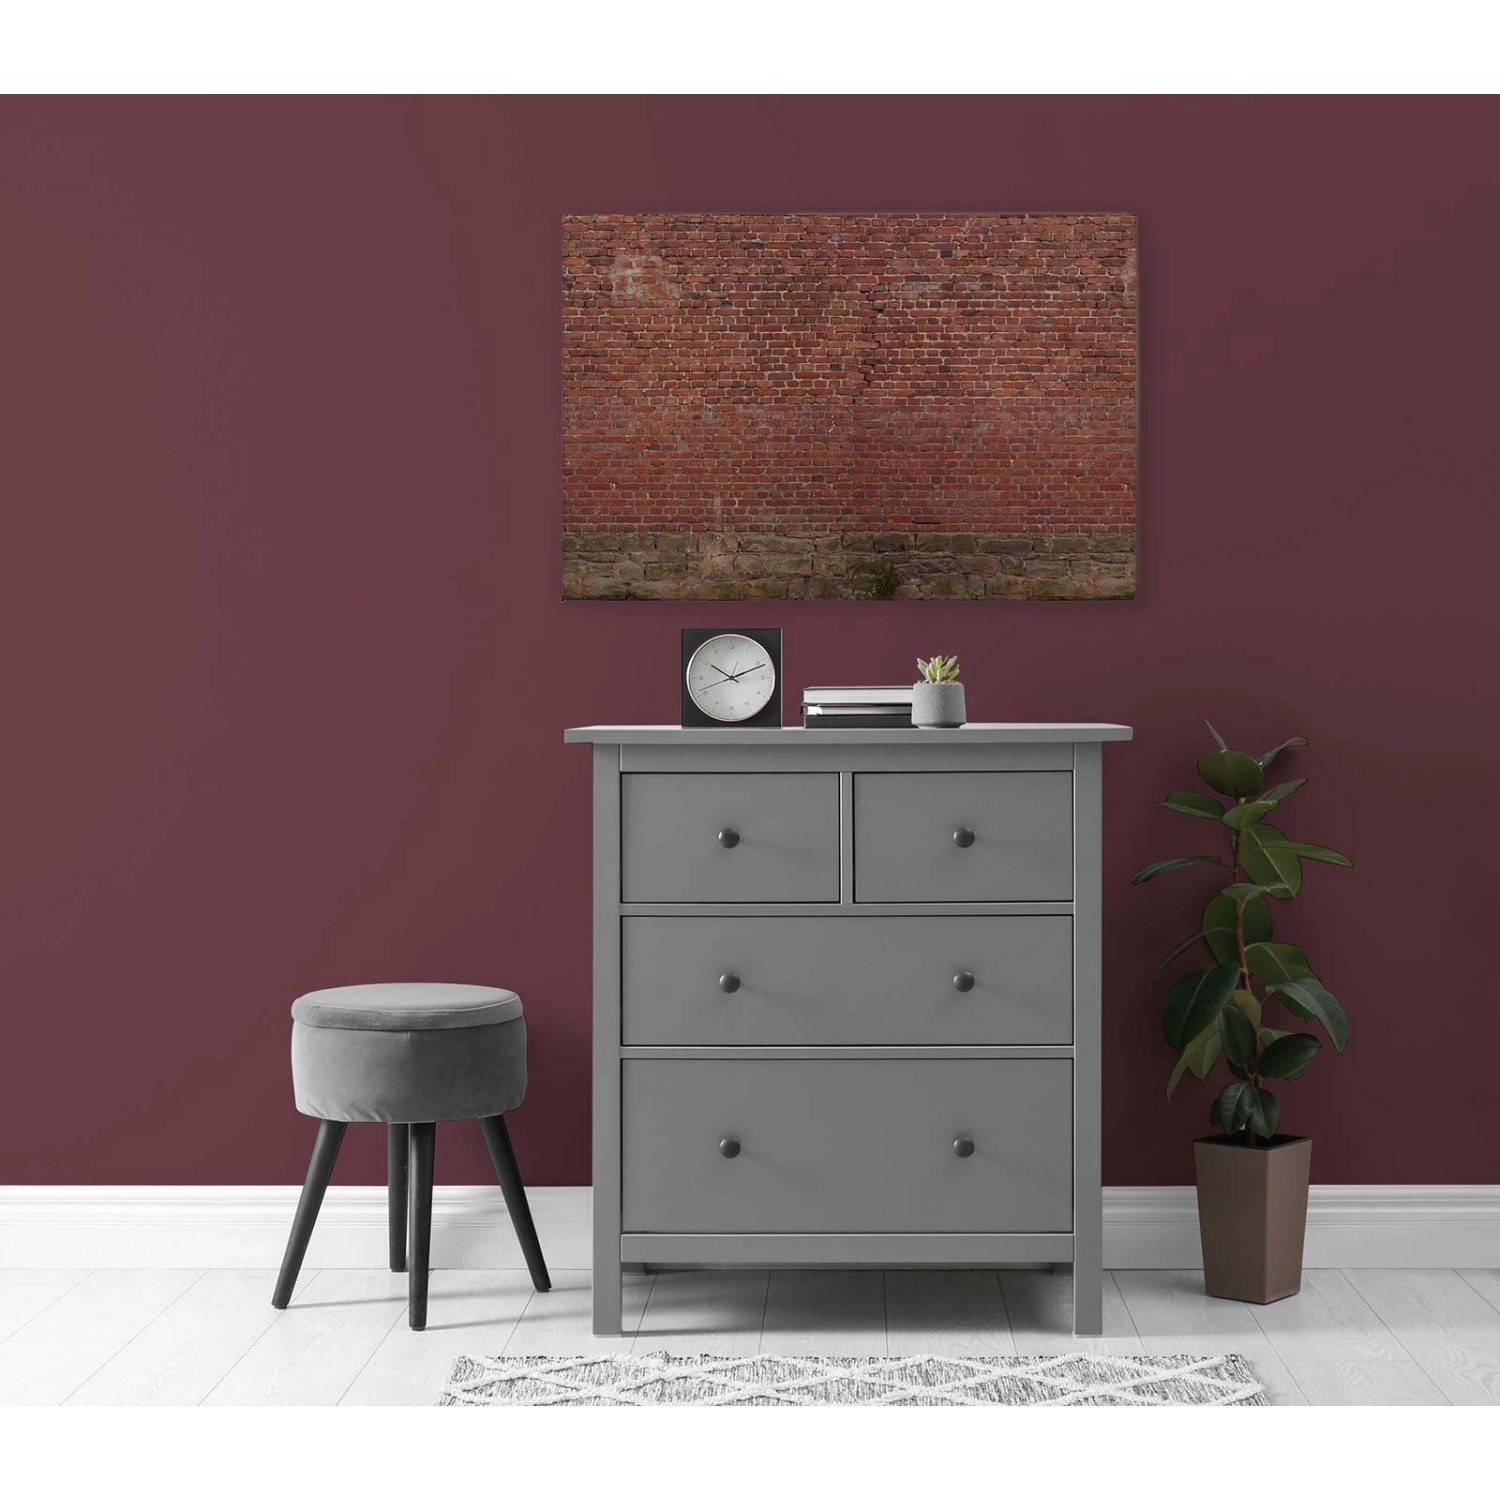 Bricoflor Backstein Wandbild Rot Braun 3D Bild Im Industrial Style Für Küche Und Teenager Leinwandbild In 90 X 60 Cm Mit